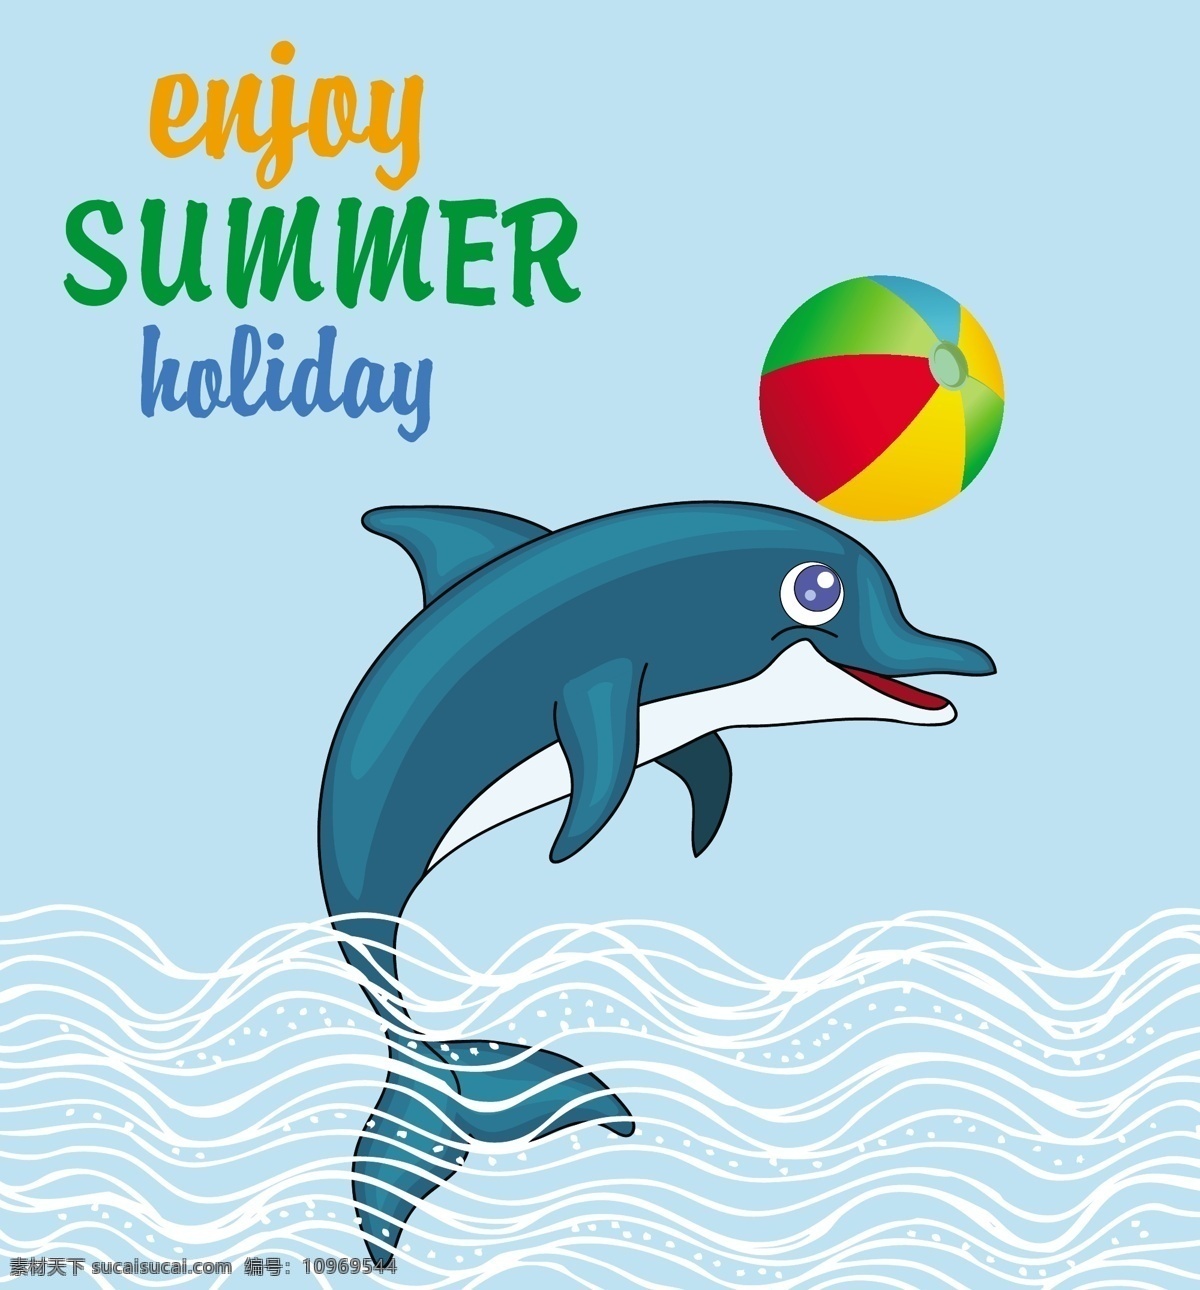 愉快 暑假 海报 矢量 元素 海边度假 海豚 海洋 排球 球 矢量素材 夏日度假